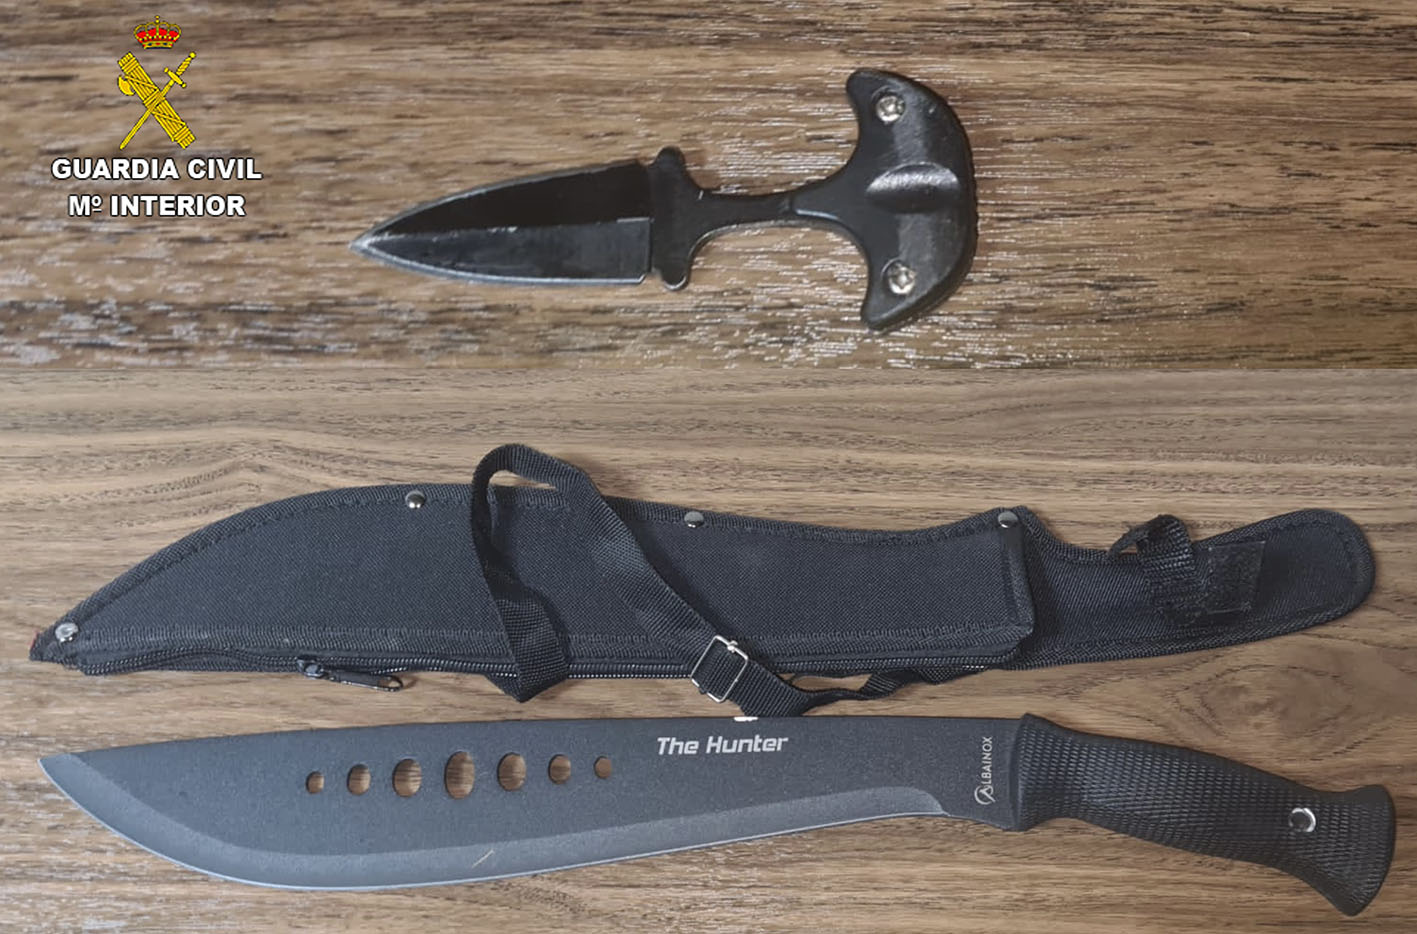 La Guardia Civil incautó un machete de 35 centímetros de hoja, un puñal de nudillo de 5 centímetros de hoja y un cuchillo de cocina.